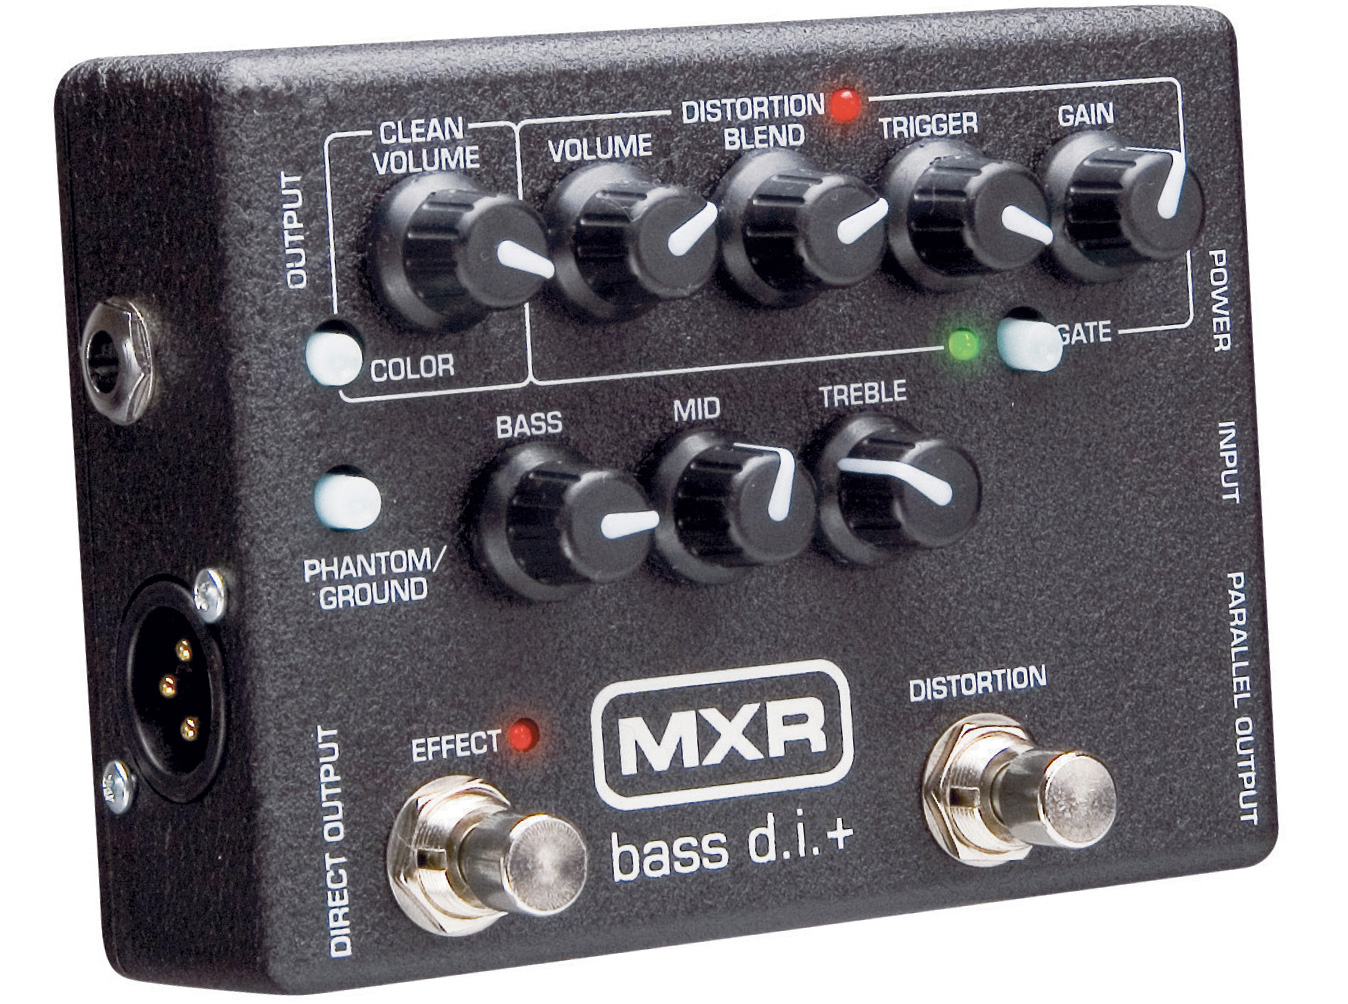 MXR M80 Bass DI+ Basspedal